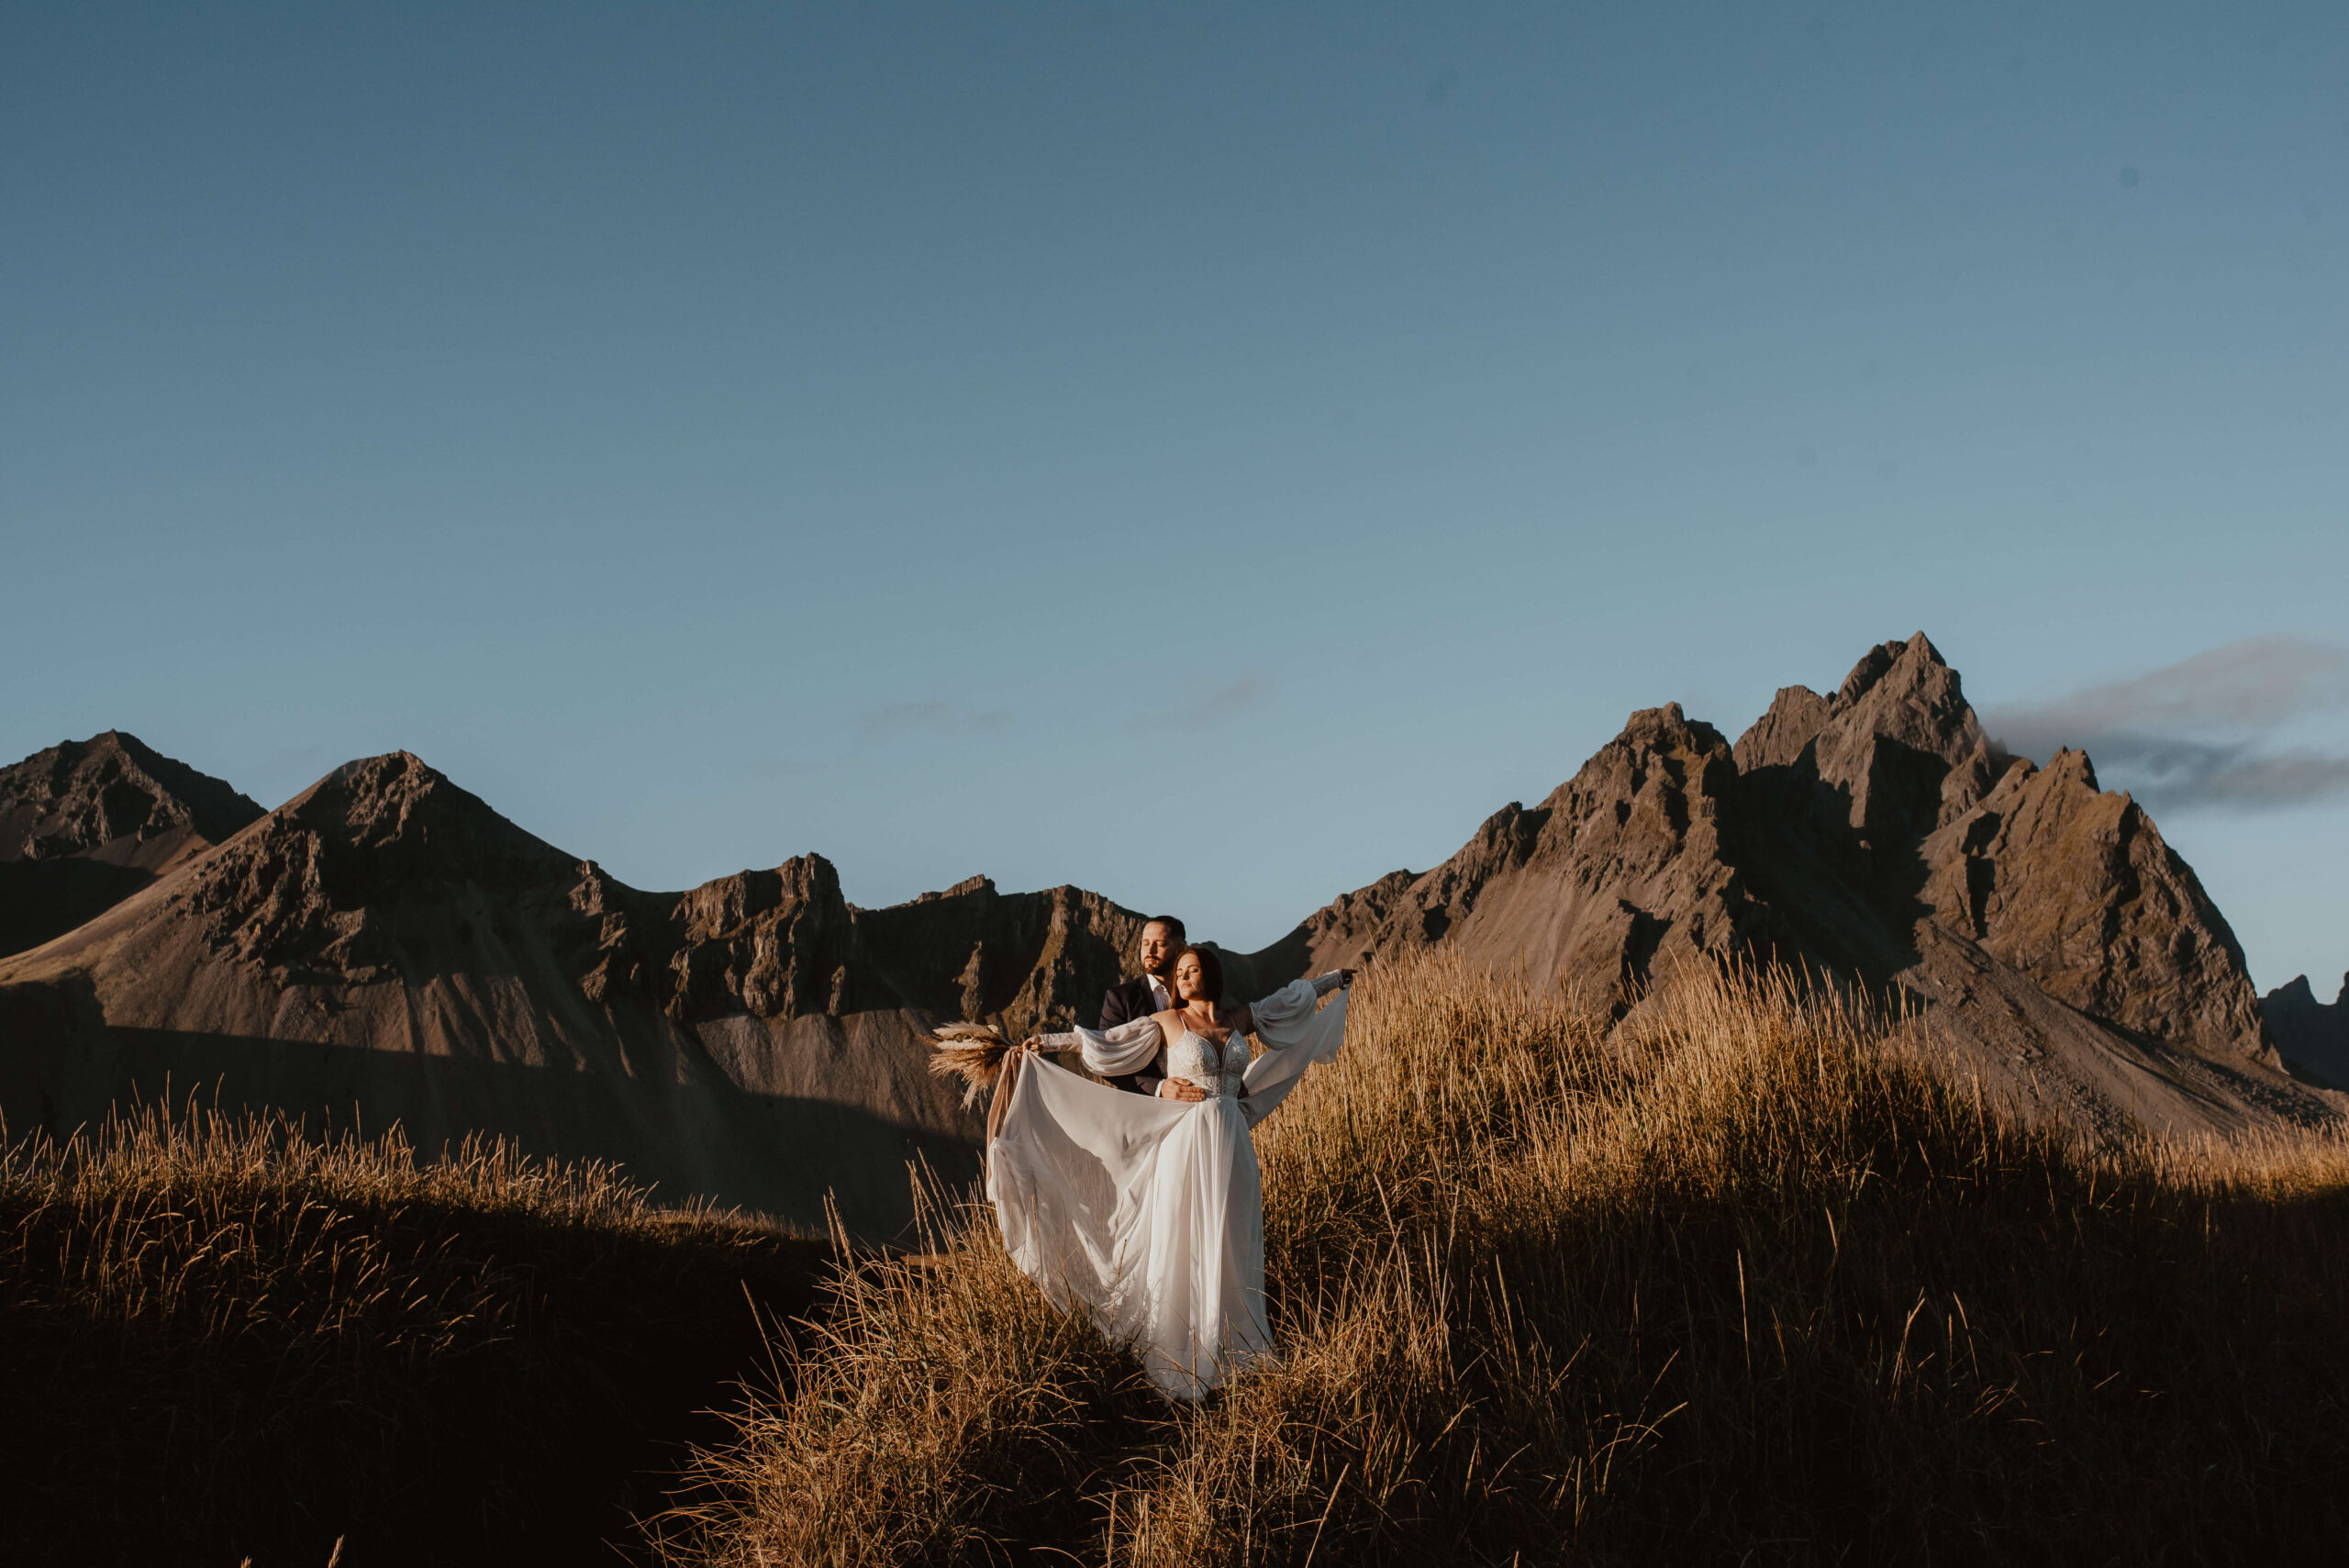 Auf diesem Foto sind ein junges Brautpaar in ihren Hochzeitskleidern auf Island zu sehen, an einem warmen Tag, mit im Hintergrund den majestätischen Bergen und dem Ozean. Das Paar umarmt sich lachend, während man das Rauschen der Wellen im Hintergrund hört. Diese Szene erinnert an eine legendäre Szene aus dem Film "Titanic". Das Foto zeigt die romantische und einzigartige Atmosphäre einer Hochzeit im Ausland. Katarzyna Nord Fotografie